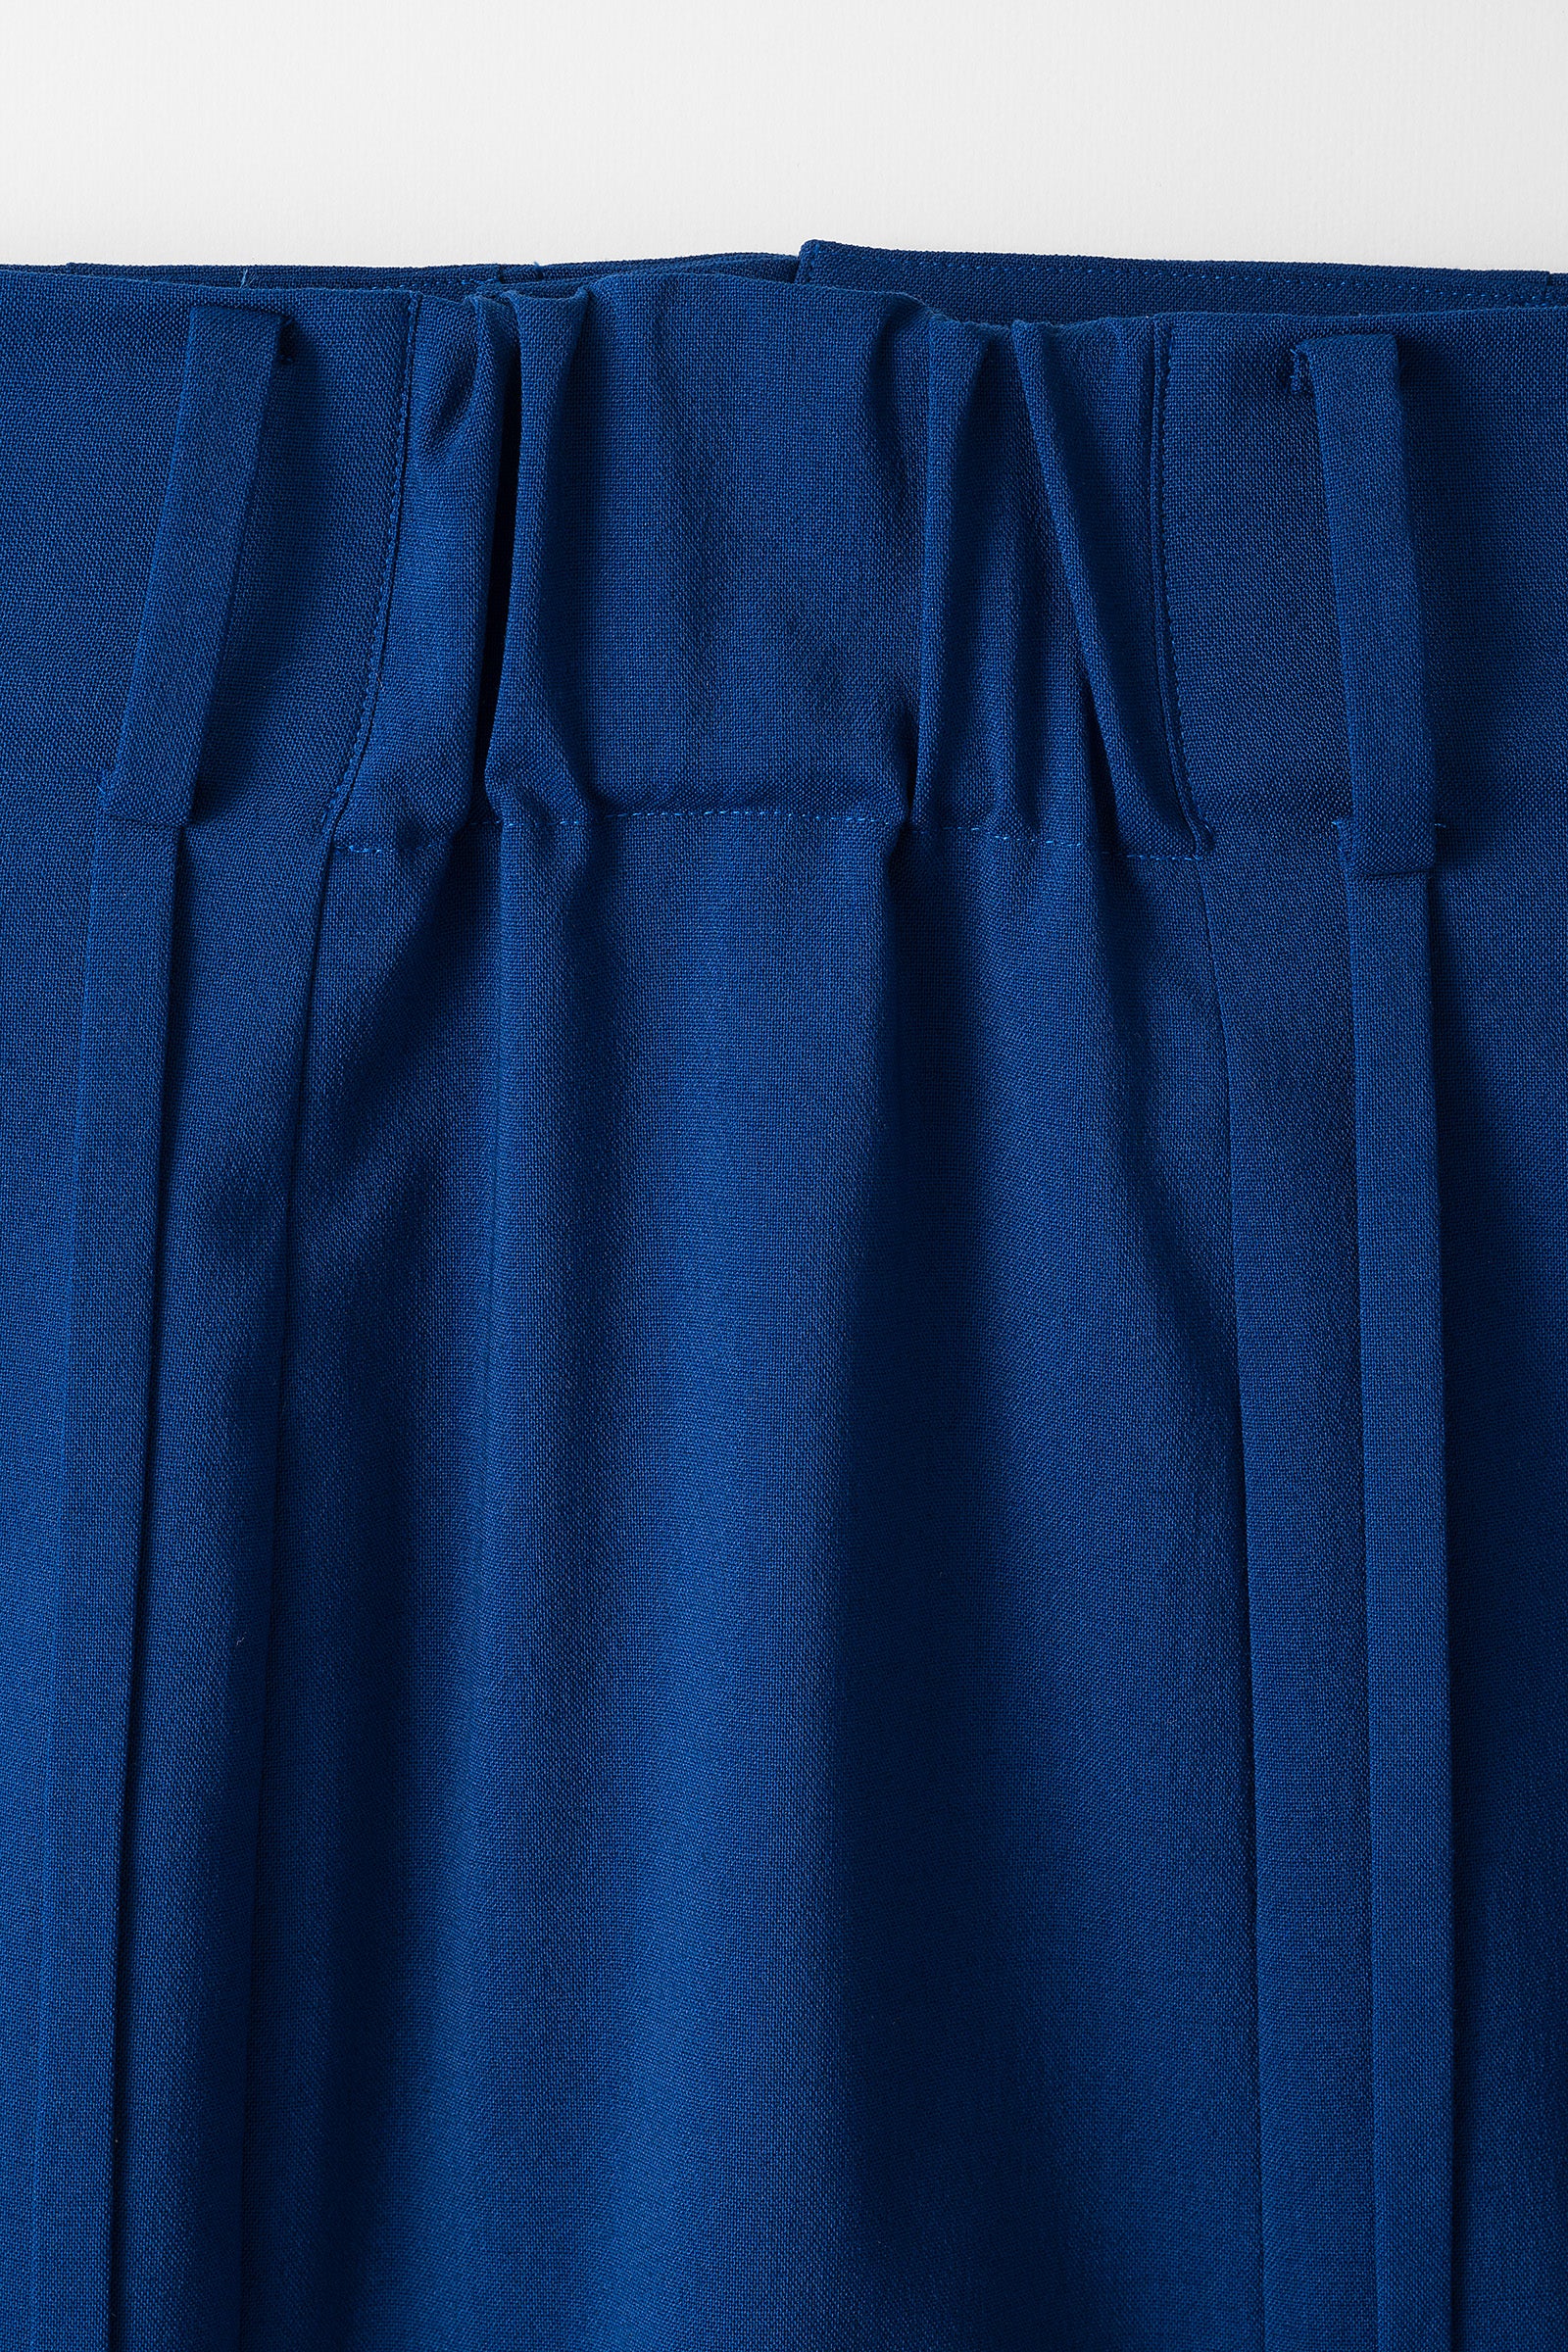 Flow string slit skirt (Blue)